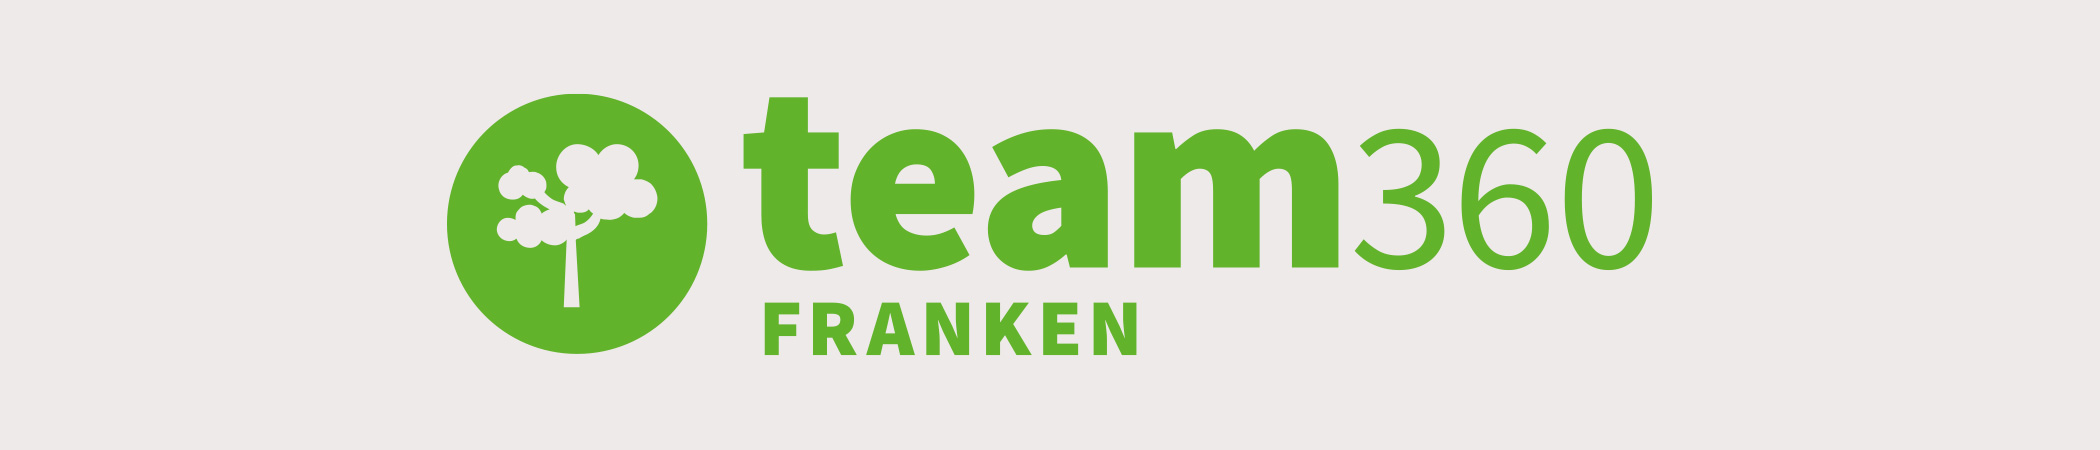 Team Franken | 360 Grad Rundgänge rund um Franken